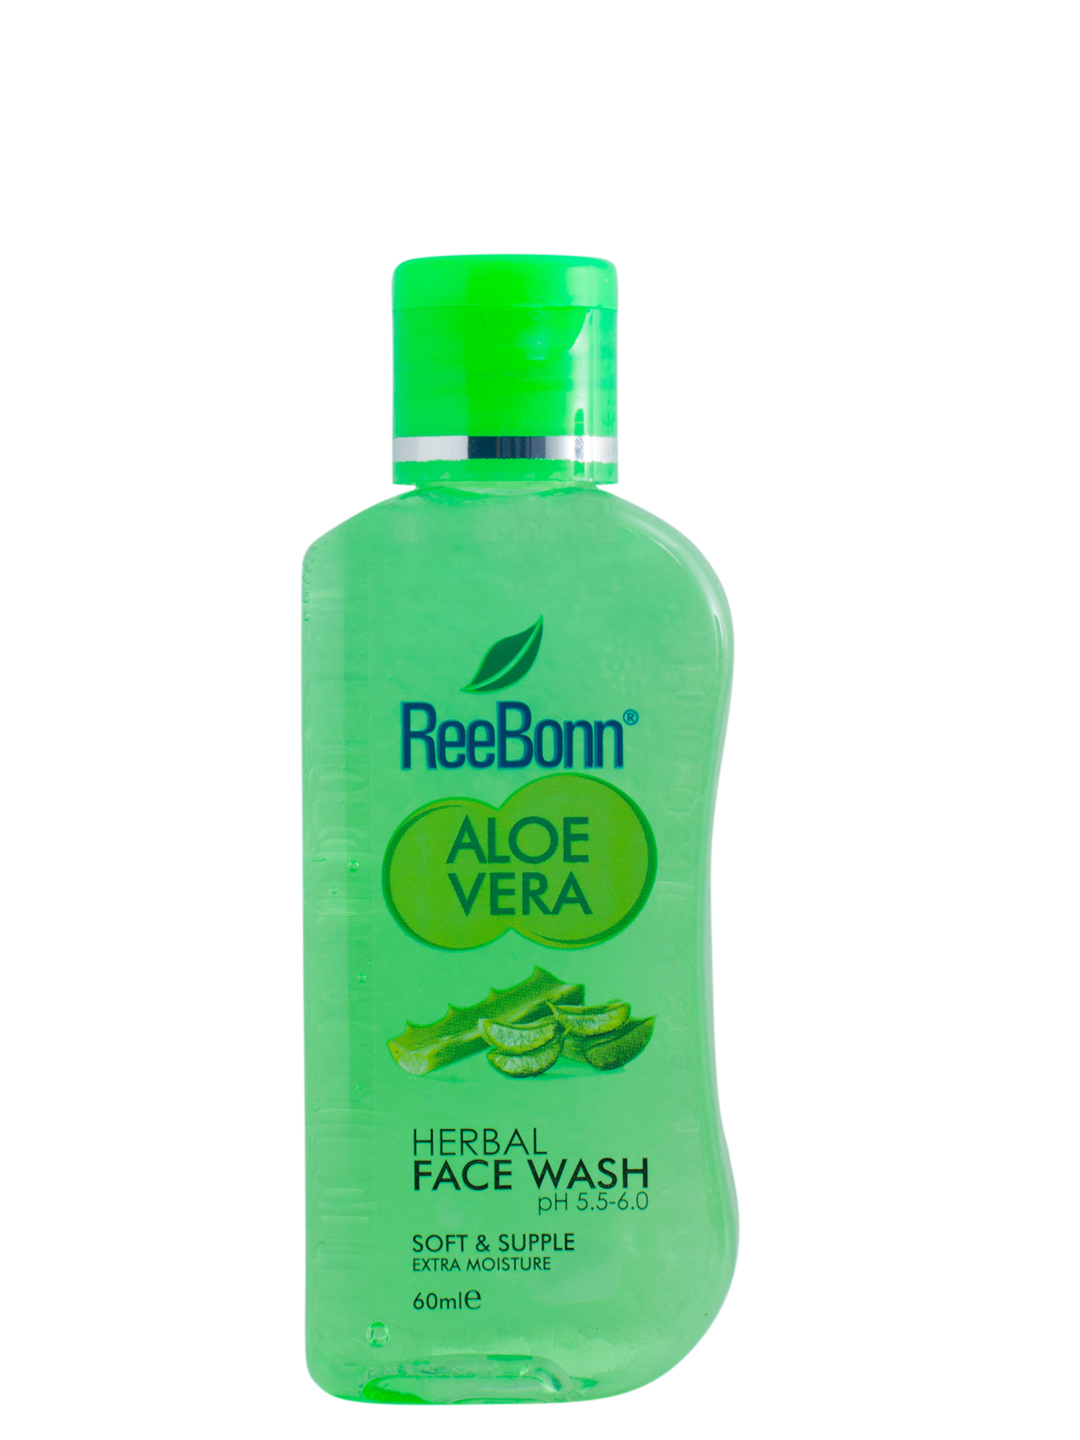 Aloe Vera Face Wash - 60ml